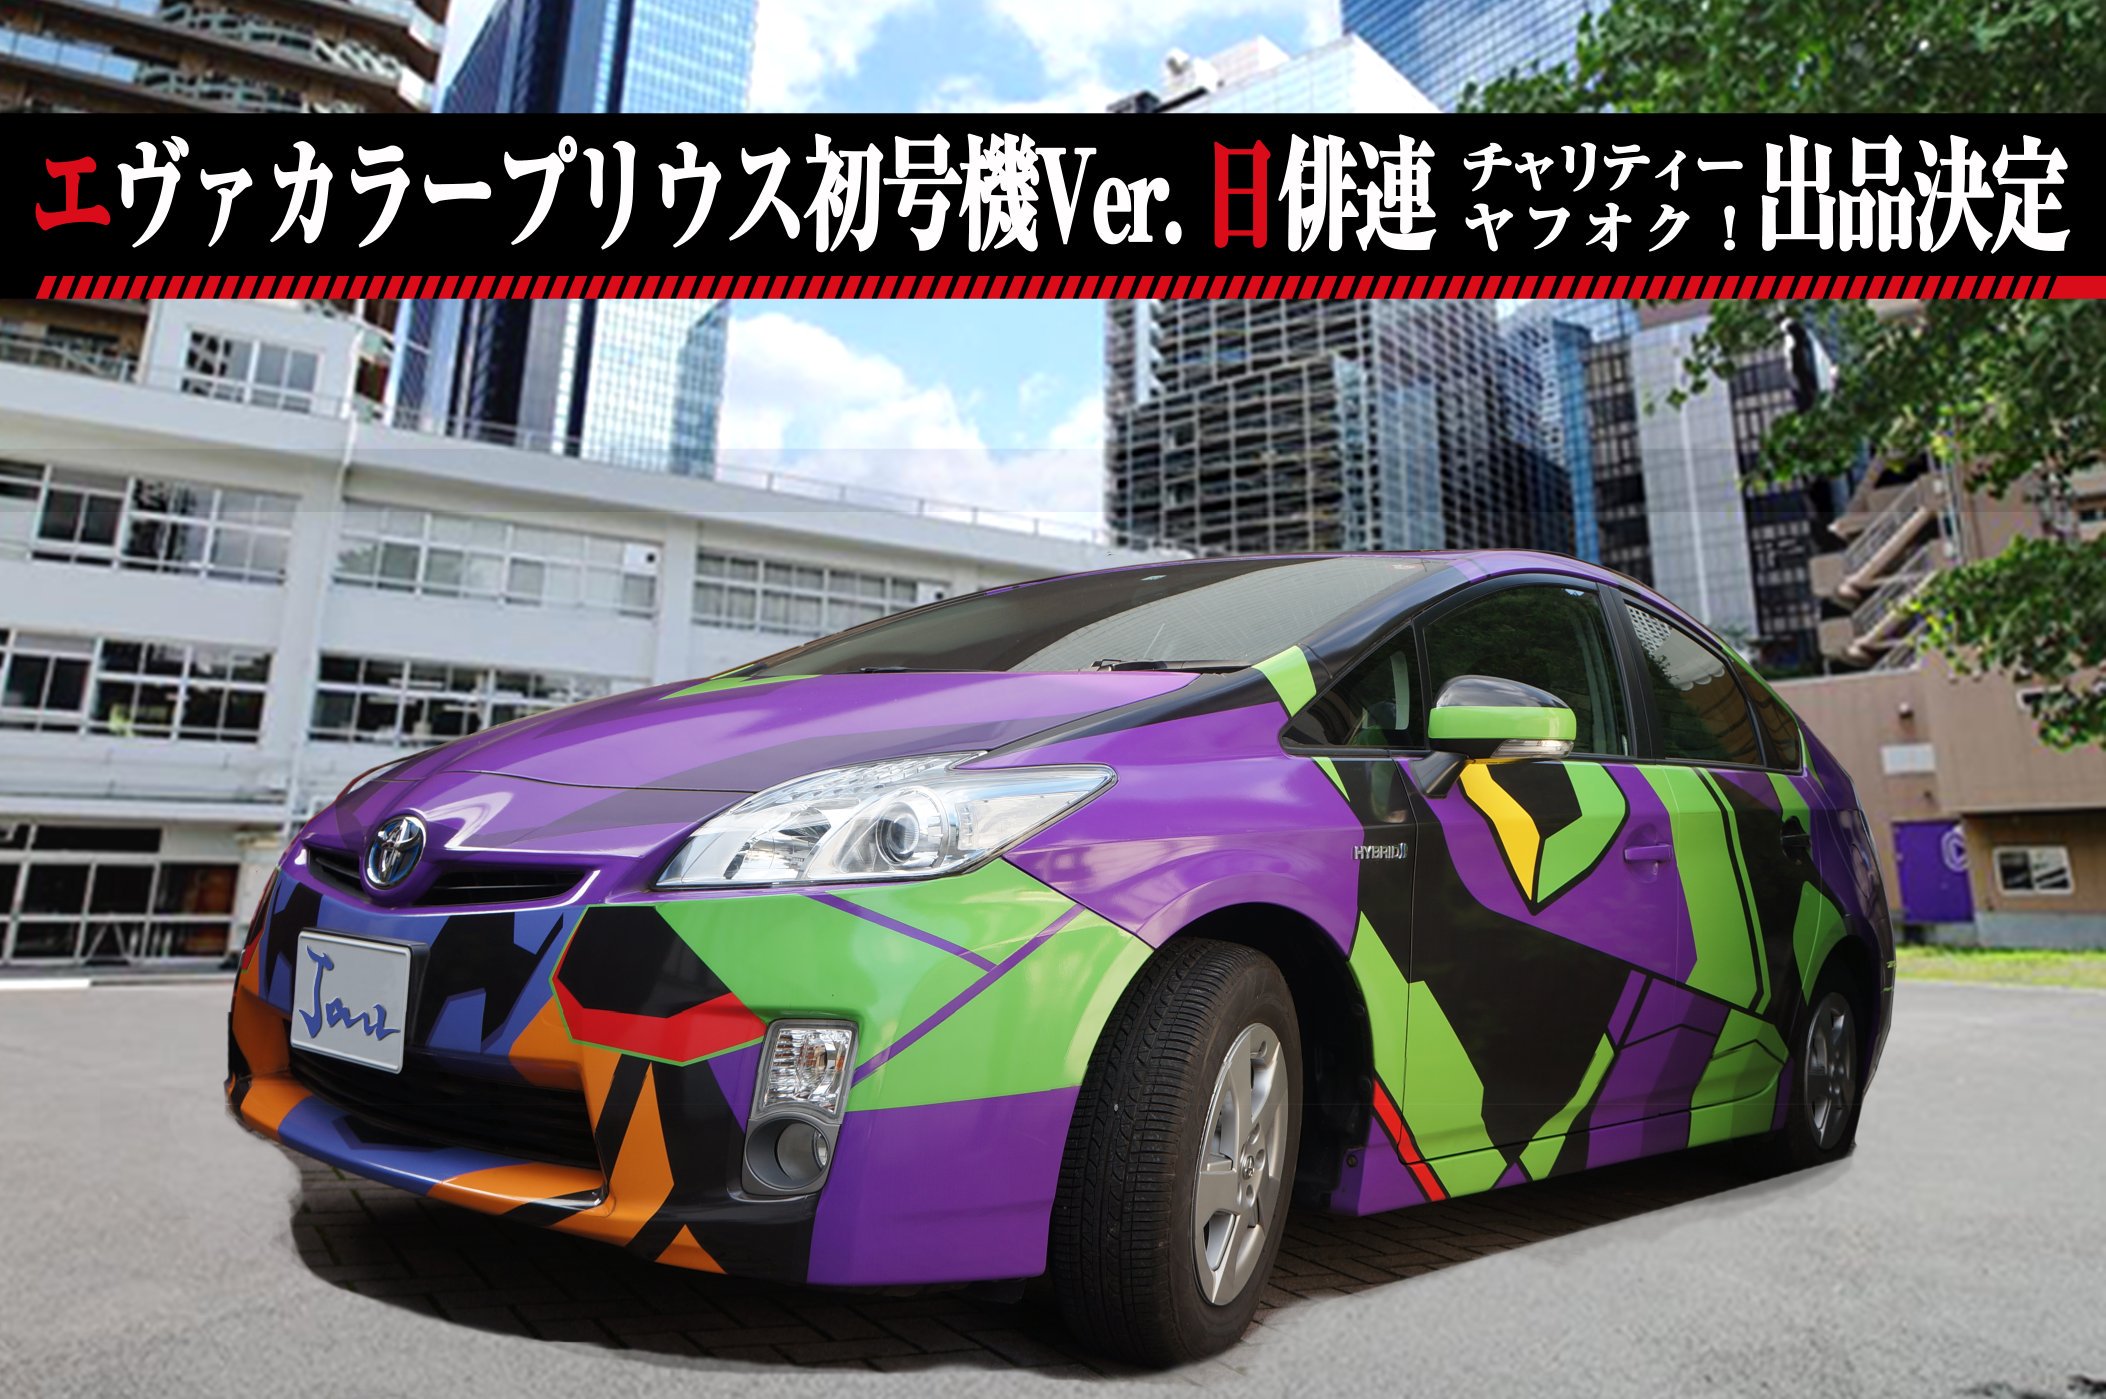 《新世纪福音战士》主题涂装车亮相 EVA慈善拍卖活动开启